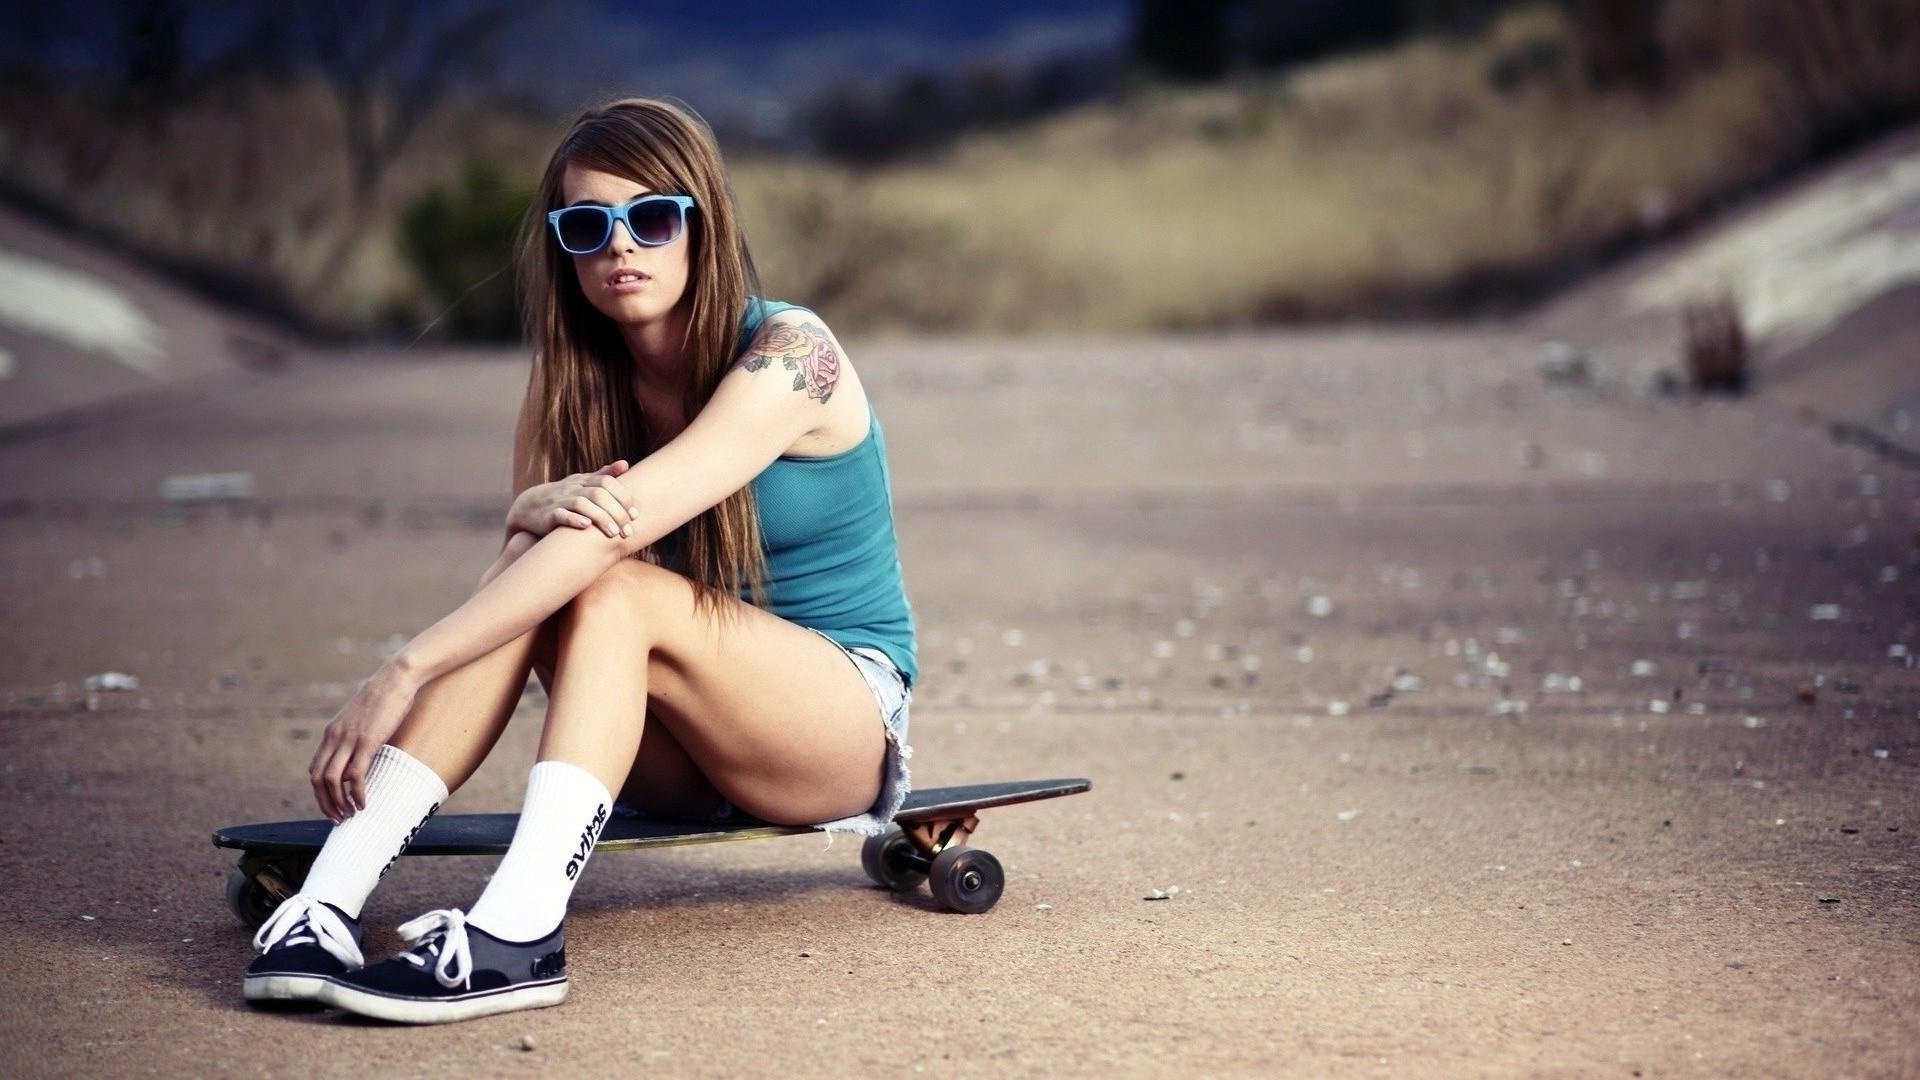 Stylish Skater Girl Full HD Wallpapers